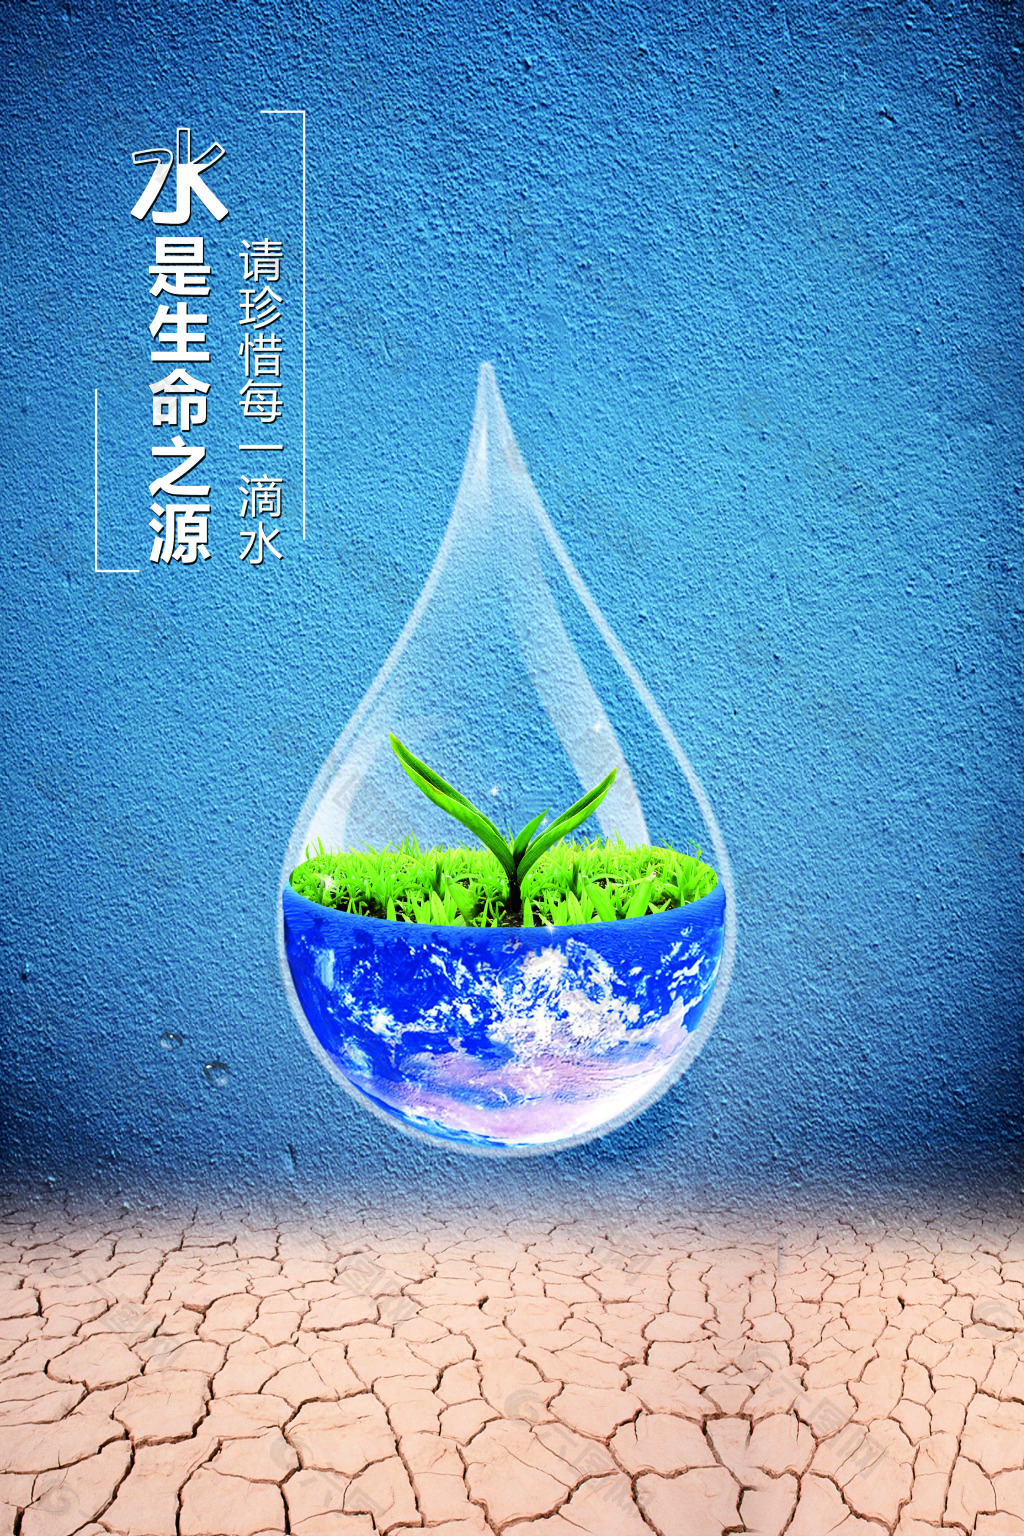 爱护水资源,从现在做起,从自己做起!